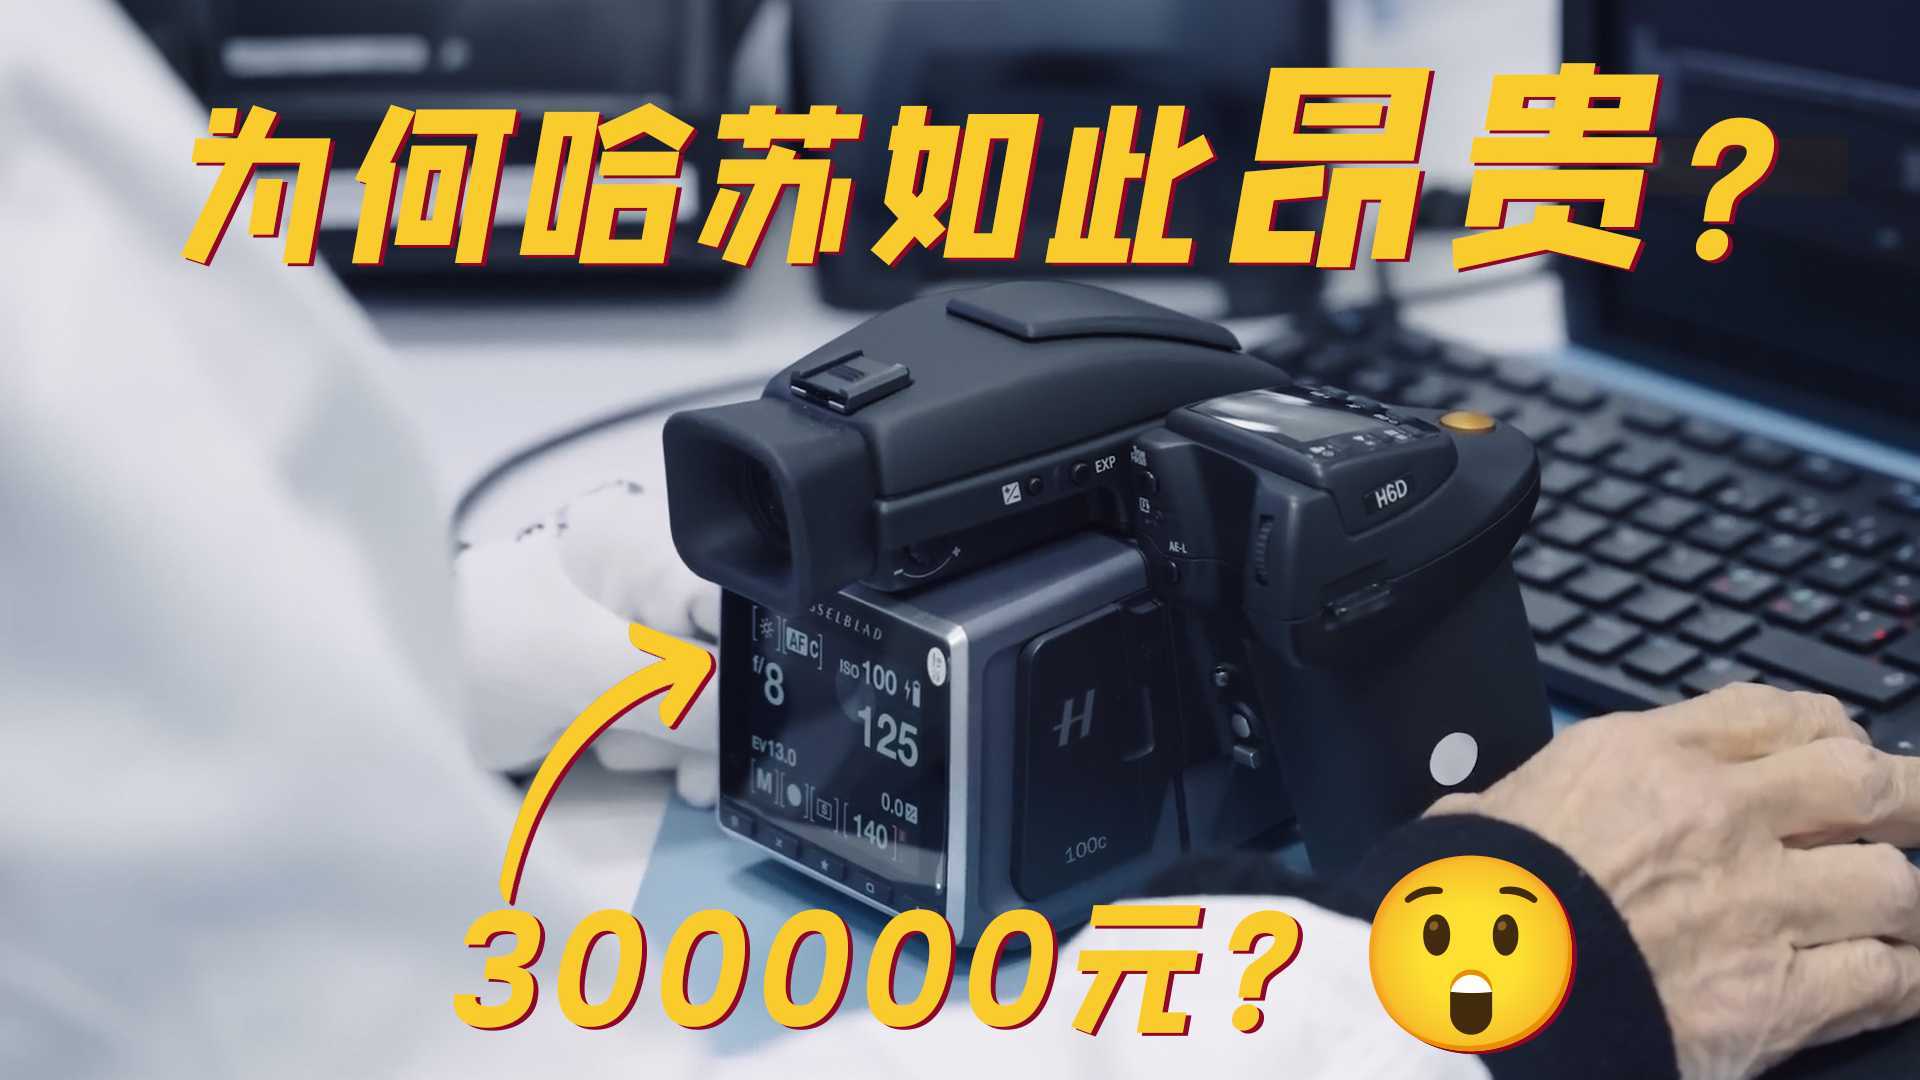 哈苏相机为何如此昂贵?传奇品质与天价标签的背后故事 ?